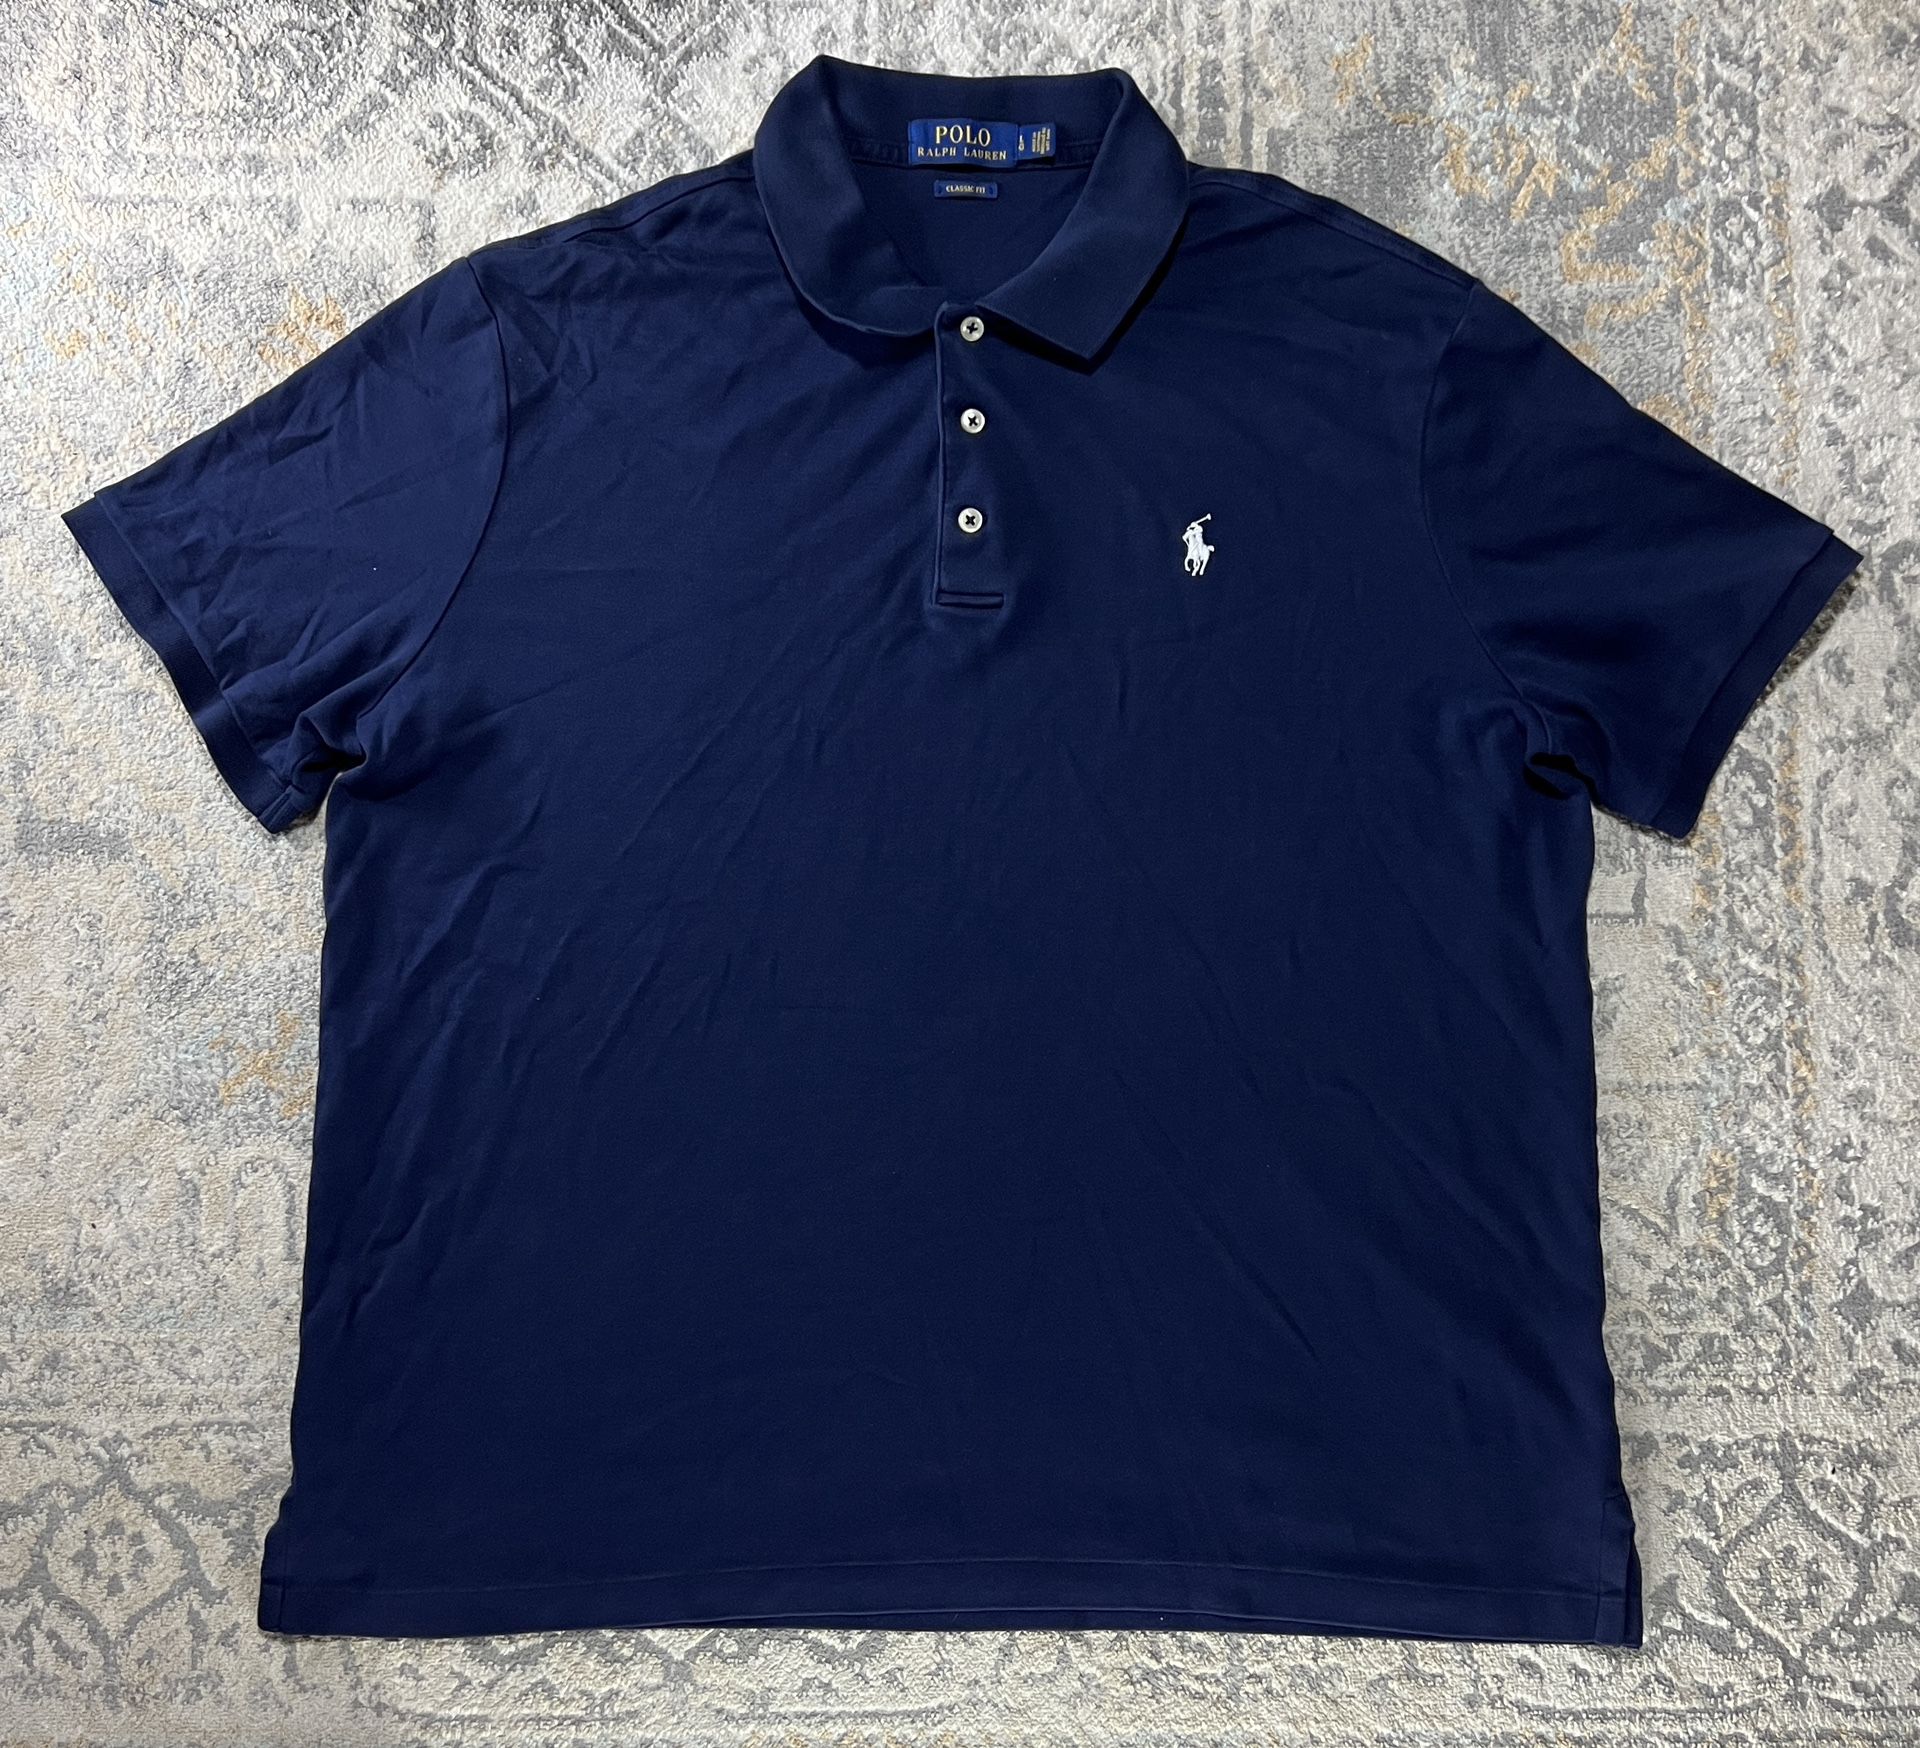 Ralph Lauren Polo Shirt Men's L Navy Blue Classic Fit Golf Casual Short Sleeve 